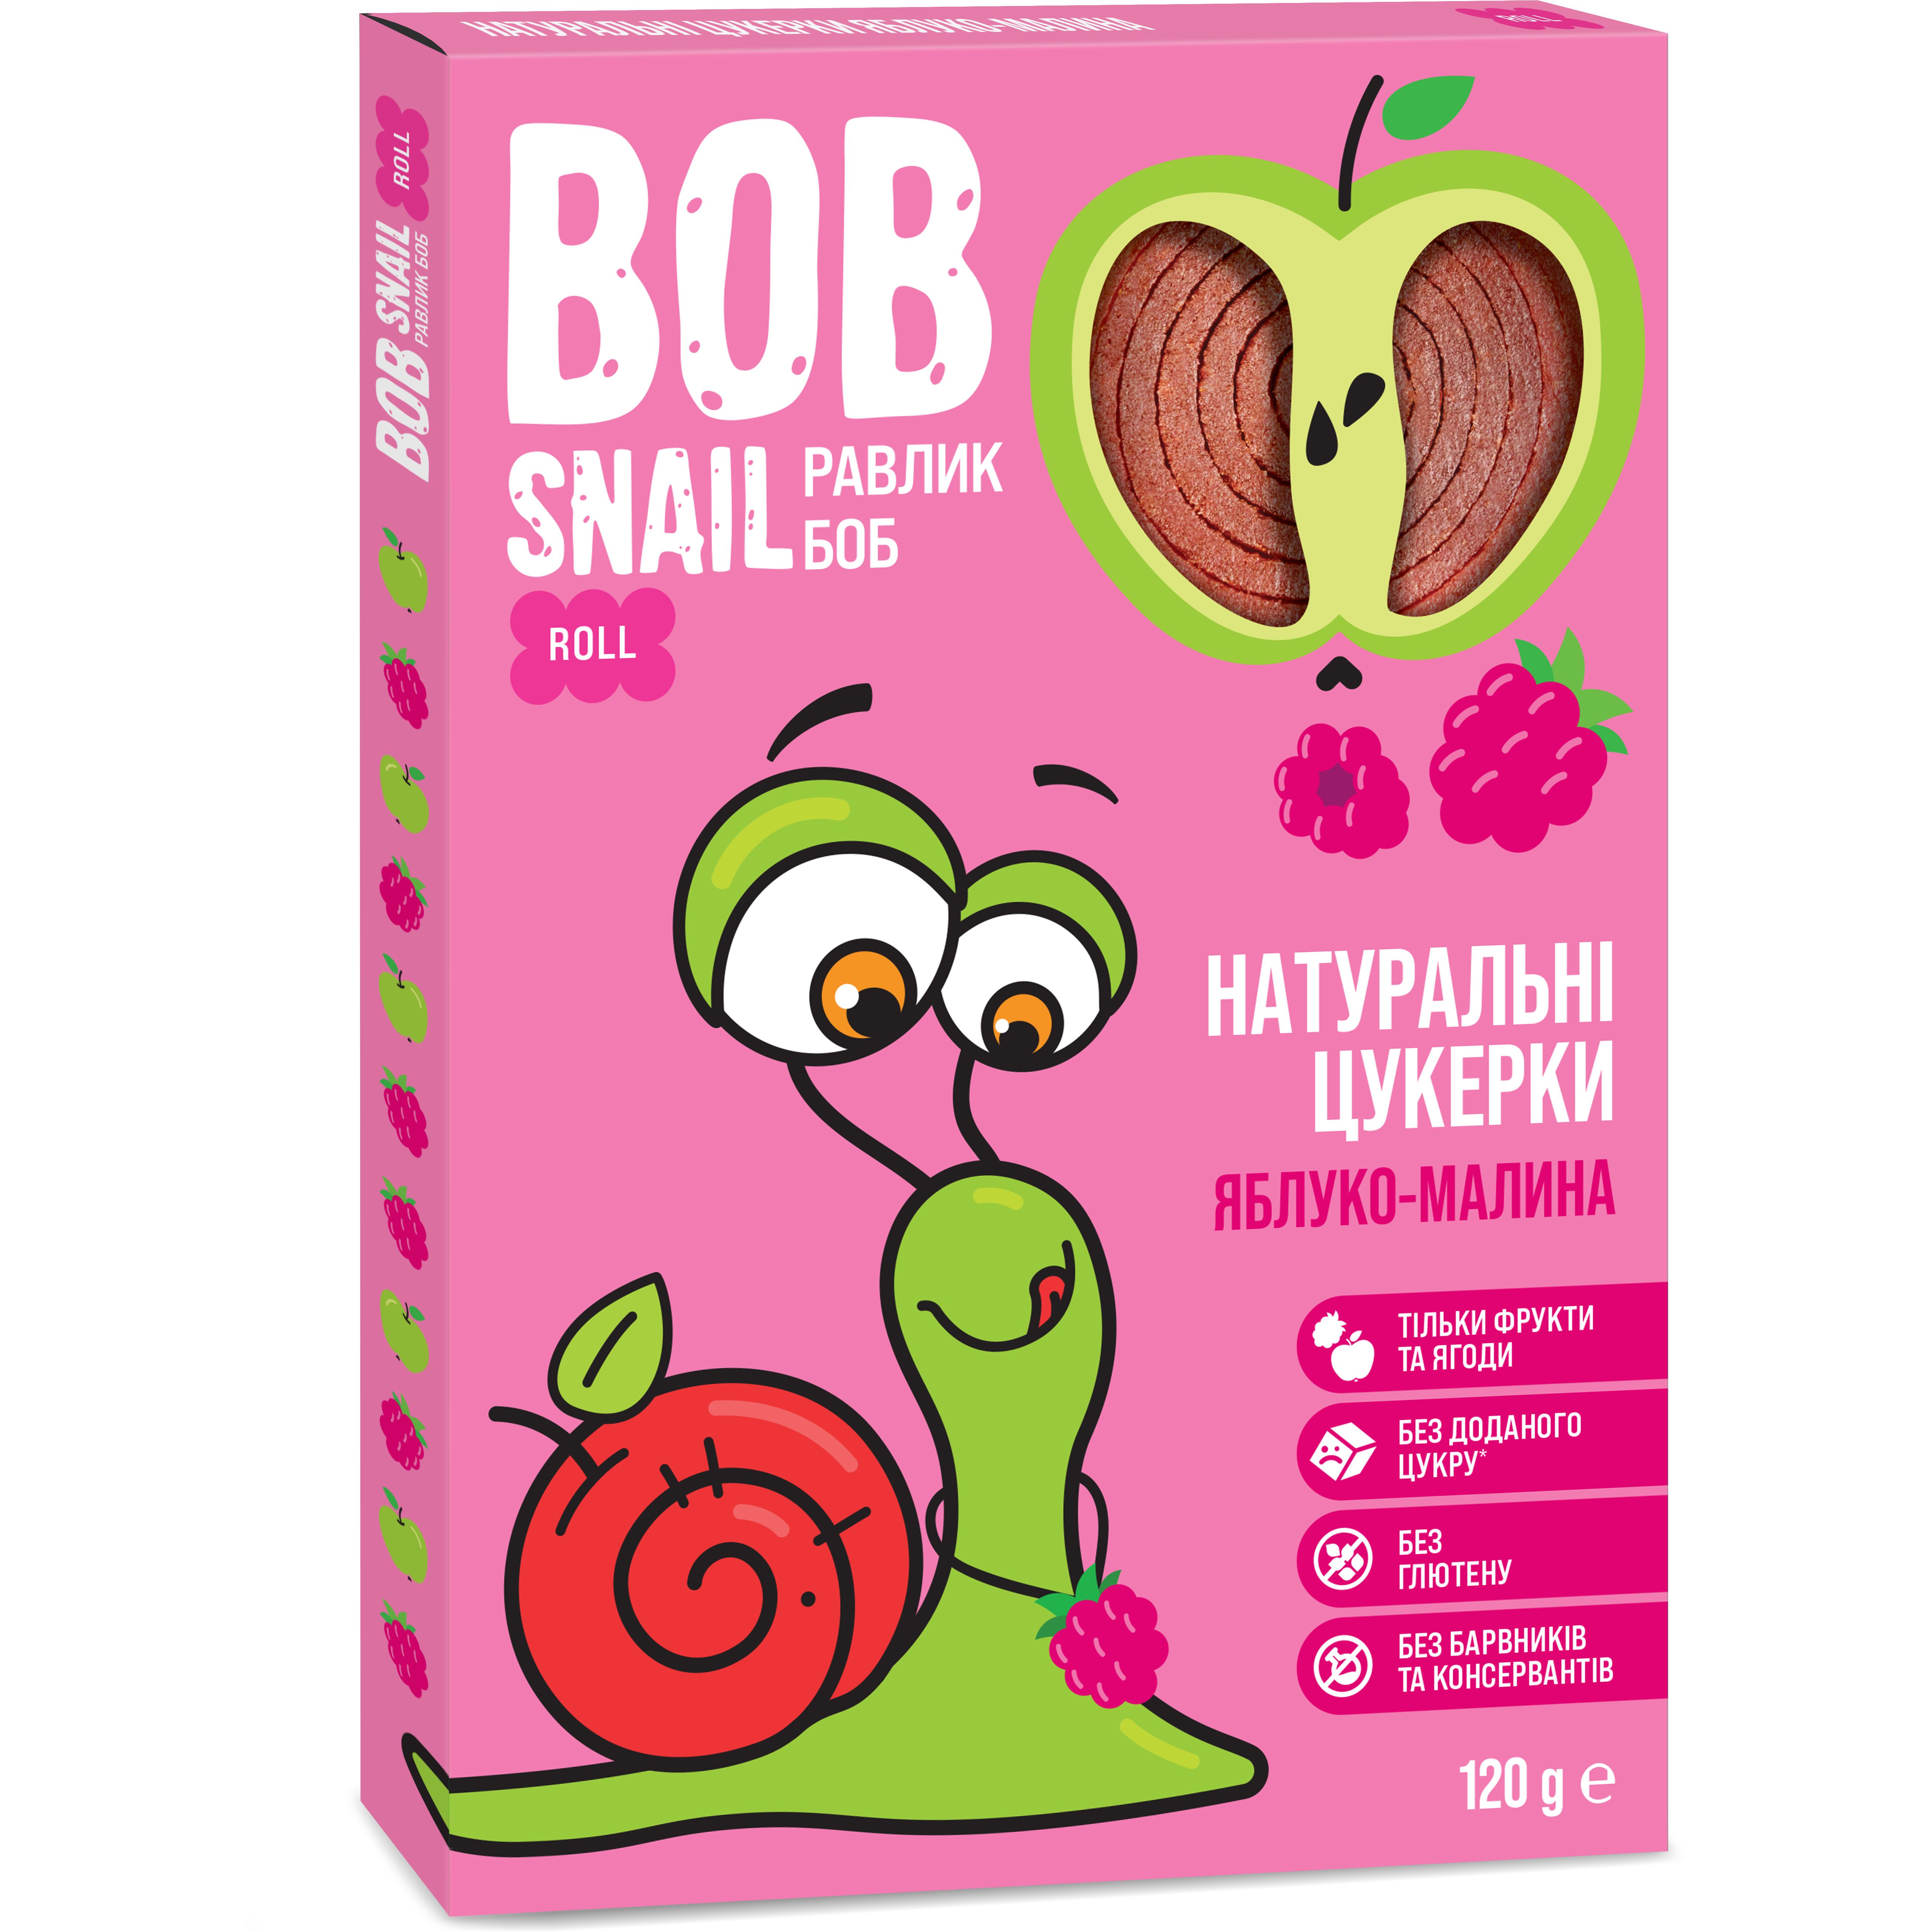 Фруктовые яблочно-малиновые конфеты Bob Snail 120 г - фото 1